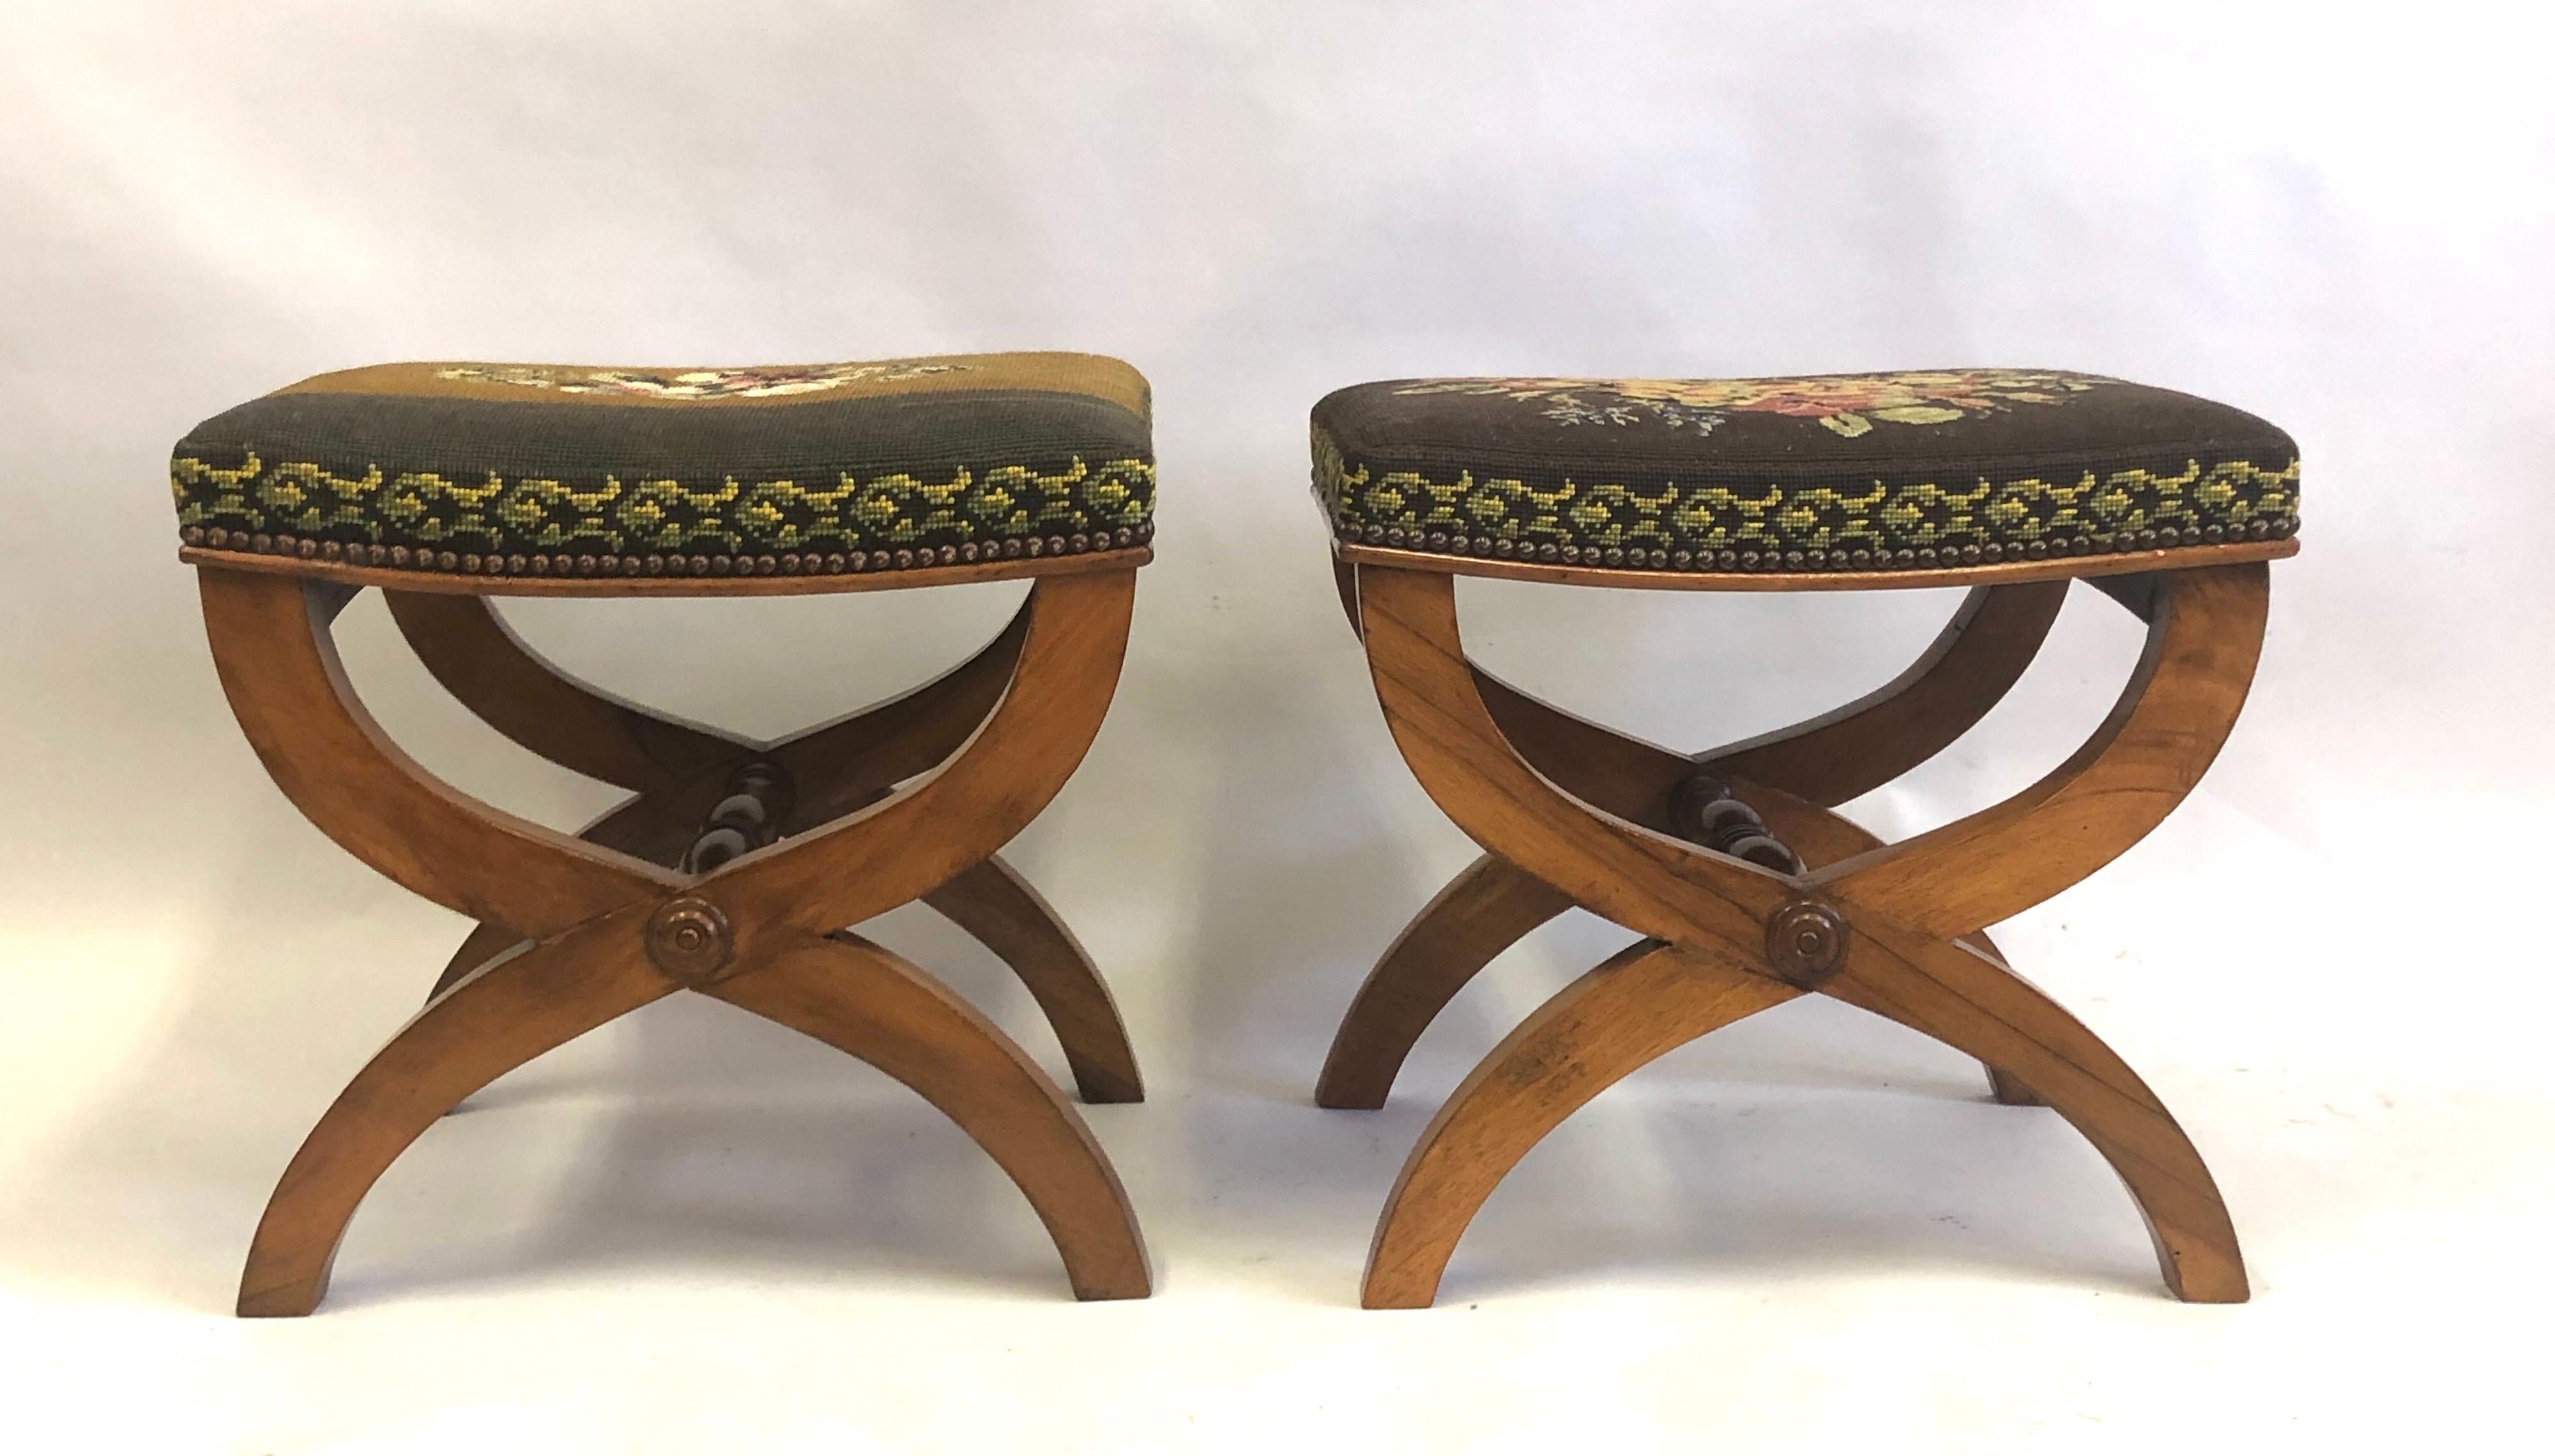 Zwei französische neoklassizistische Bänke oder Hocker aus der Jahrhundertmitte mit Sitzflächen aus Nadelspitze, die Andre Arbus zugeschrieben werden. Die Bänke haben eine geschwungene Form mit einer X-förmigen Beinstruktur.